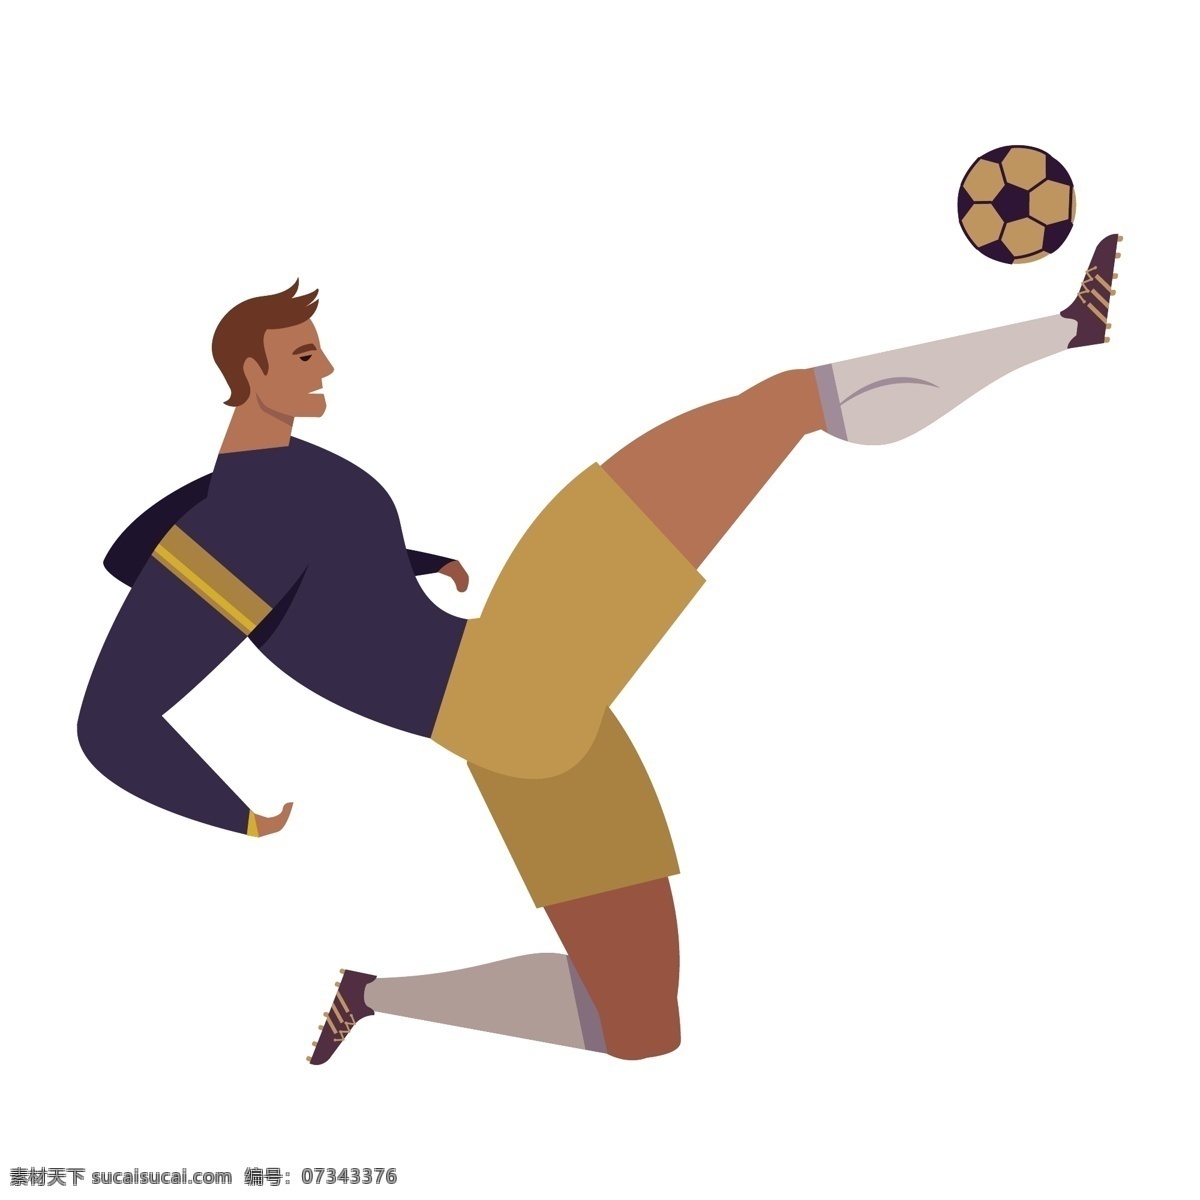 足球 踢球 姿势 矢量 足球运动员 运动员 体育 体育运动员 足球运动 运动足球 足球姿势 动作 动作姿势 运动姿势